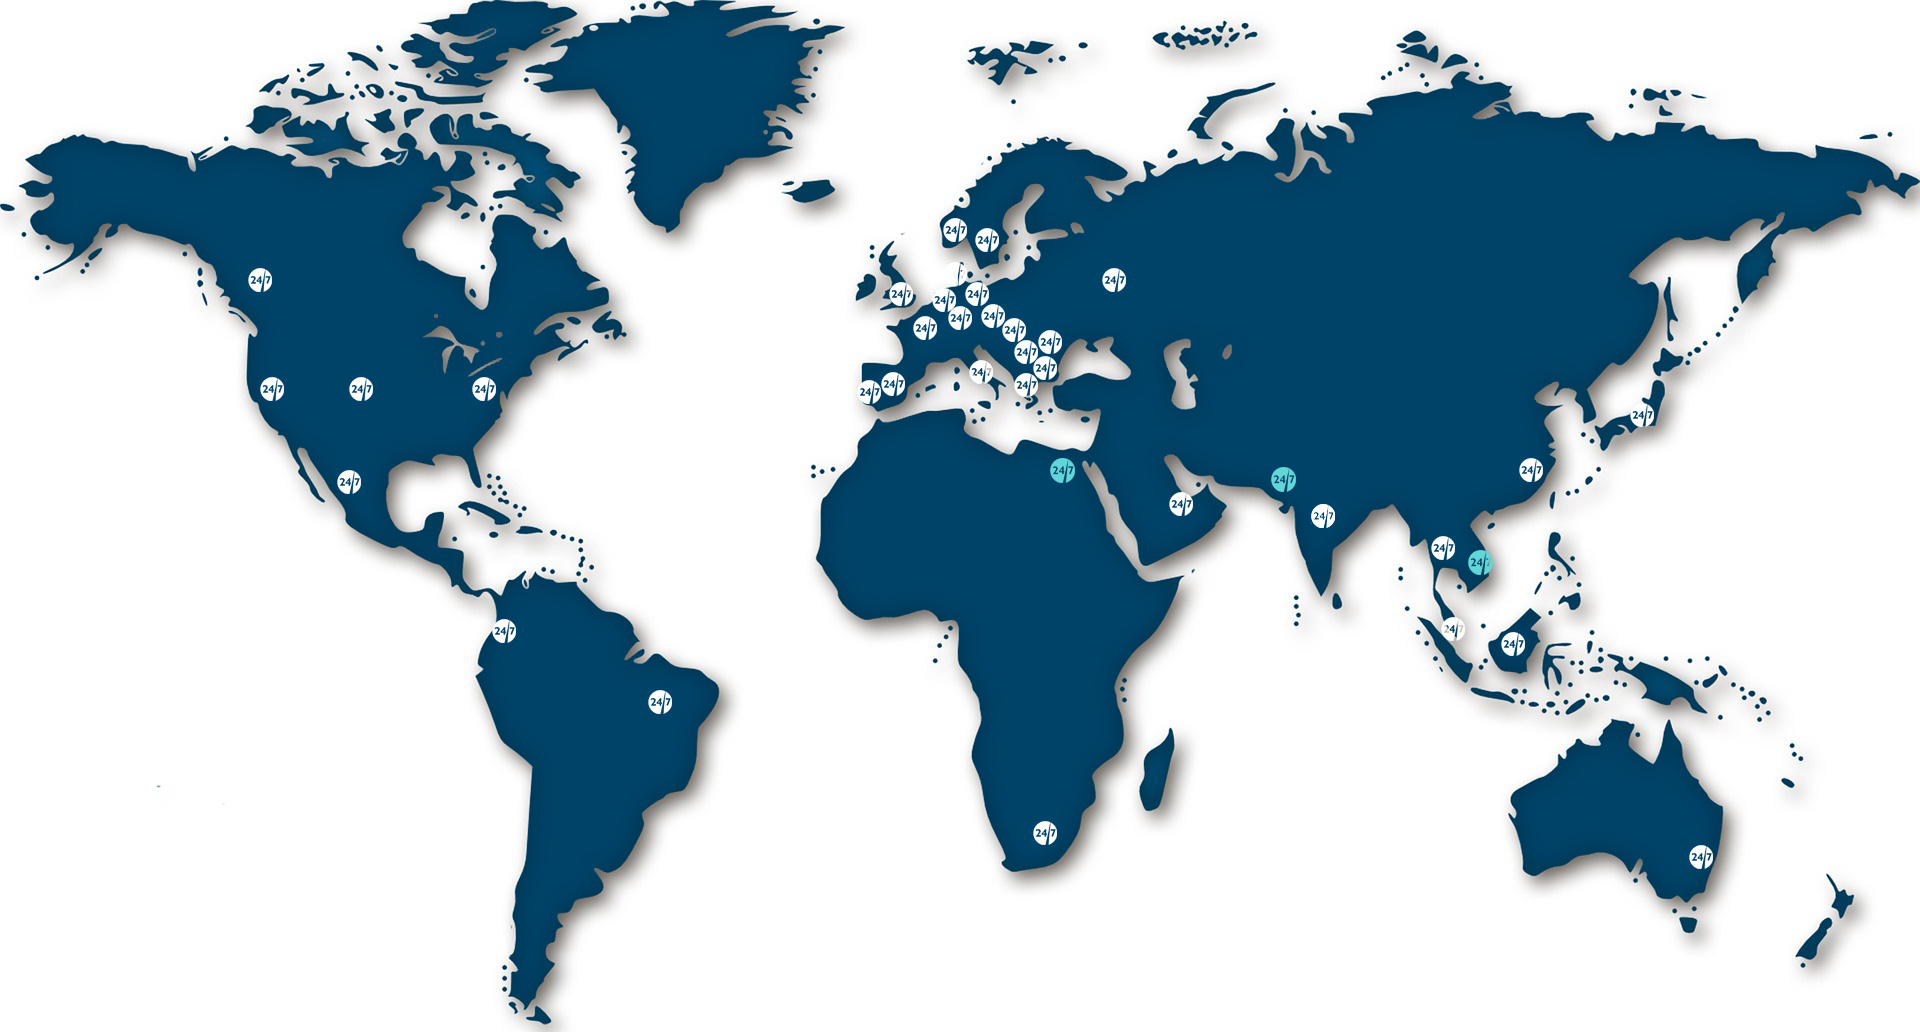 mapa del mundo en azul oscuro con logos redondos blancos en las ubicaciones UX24/7